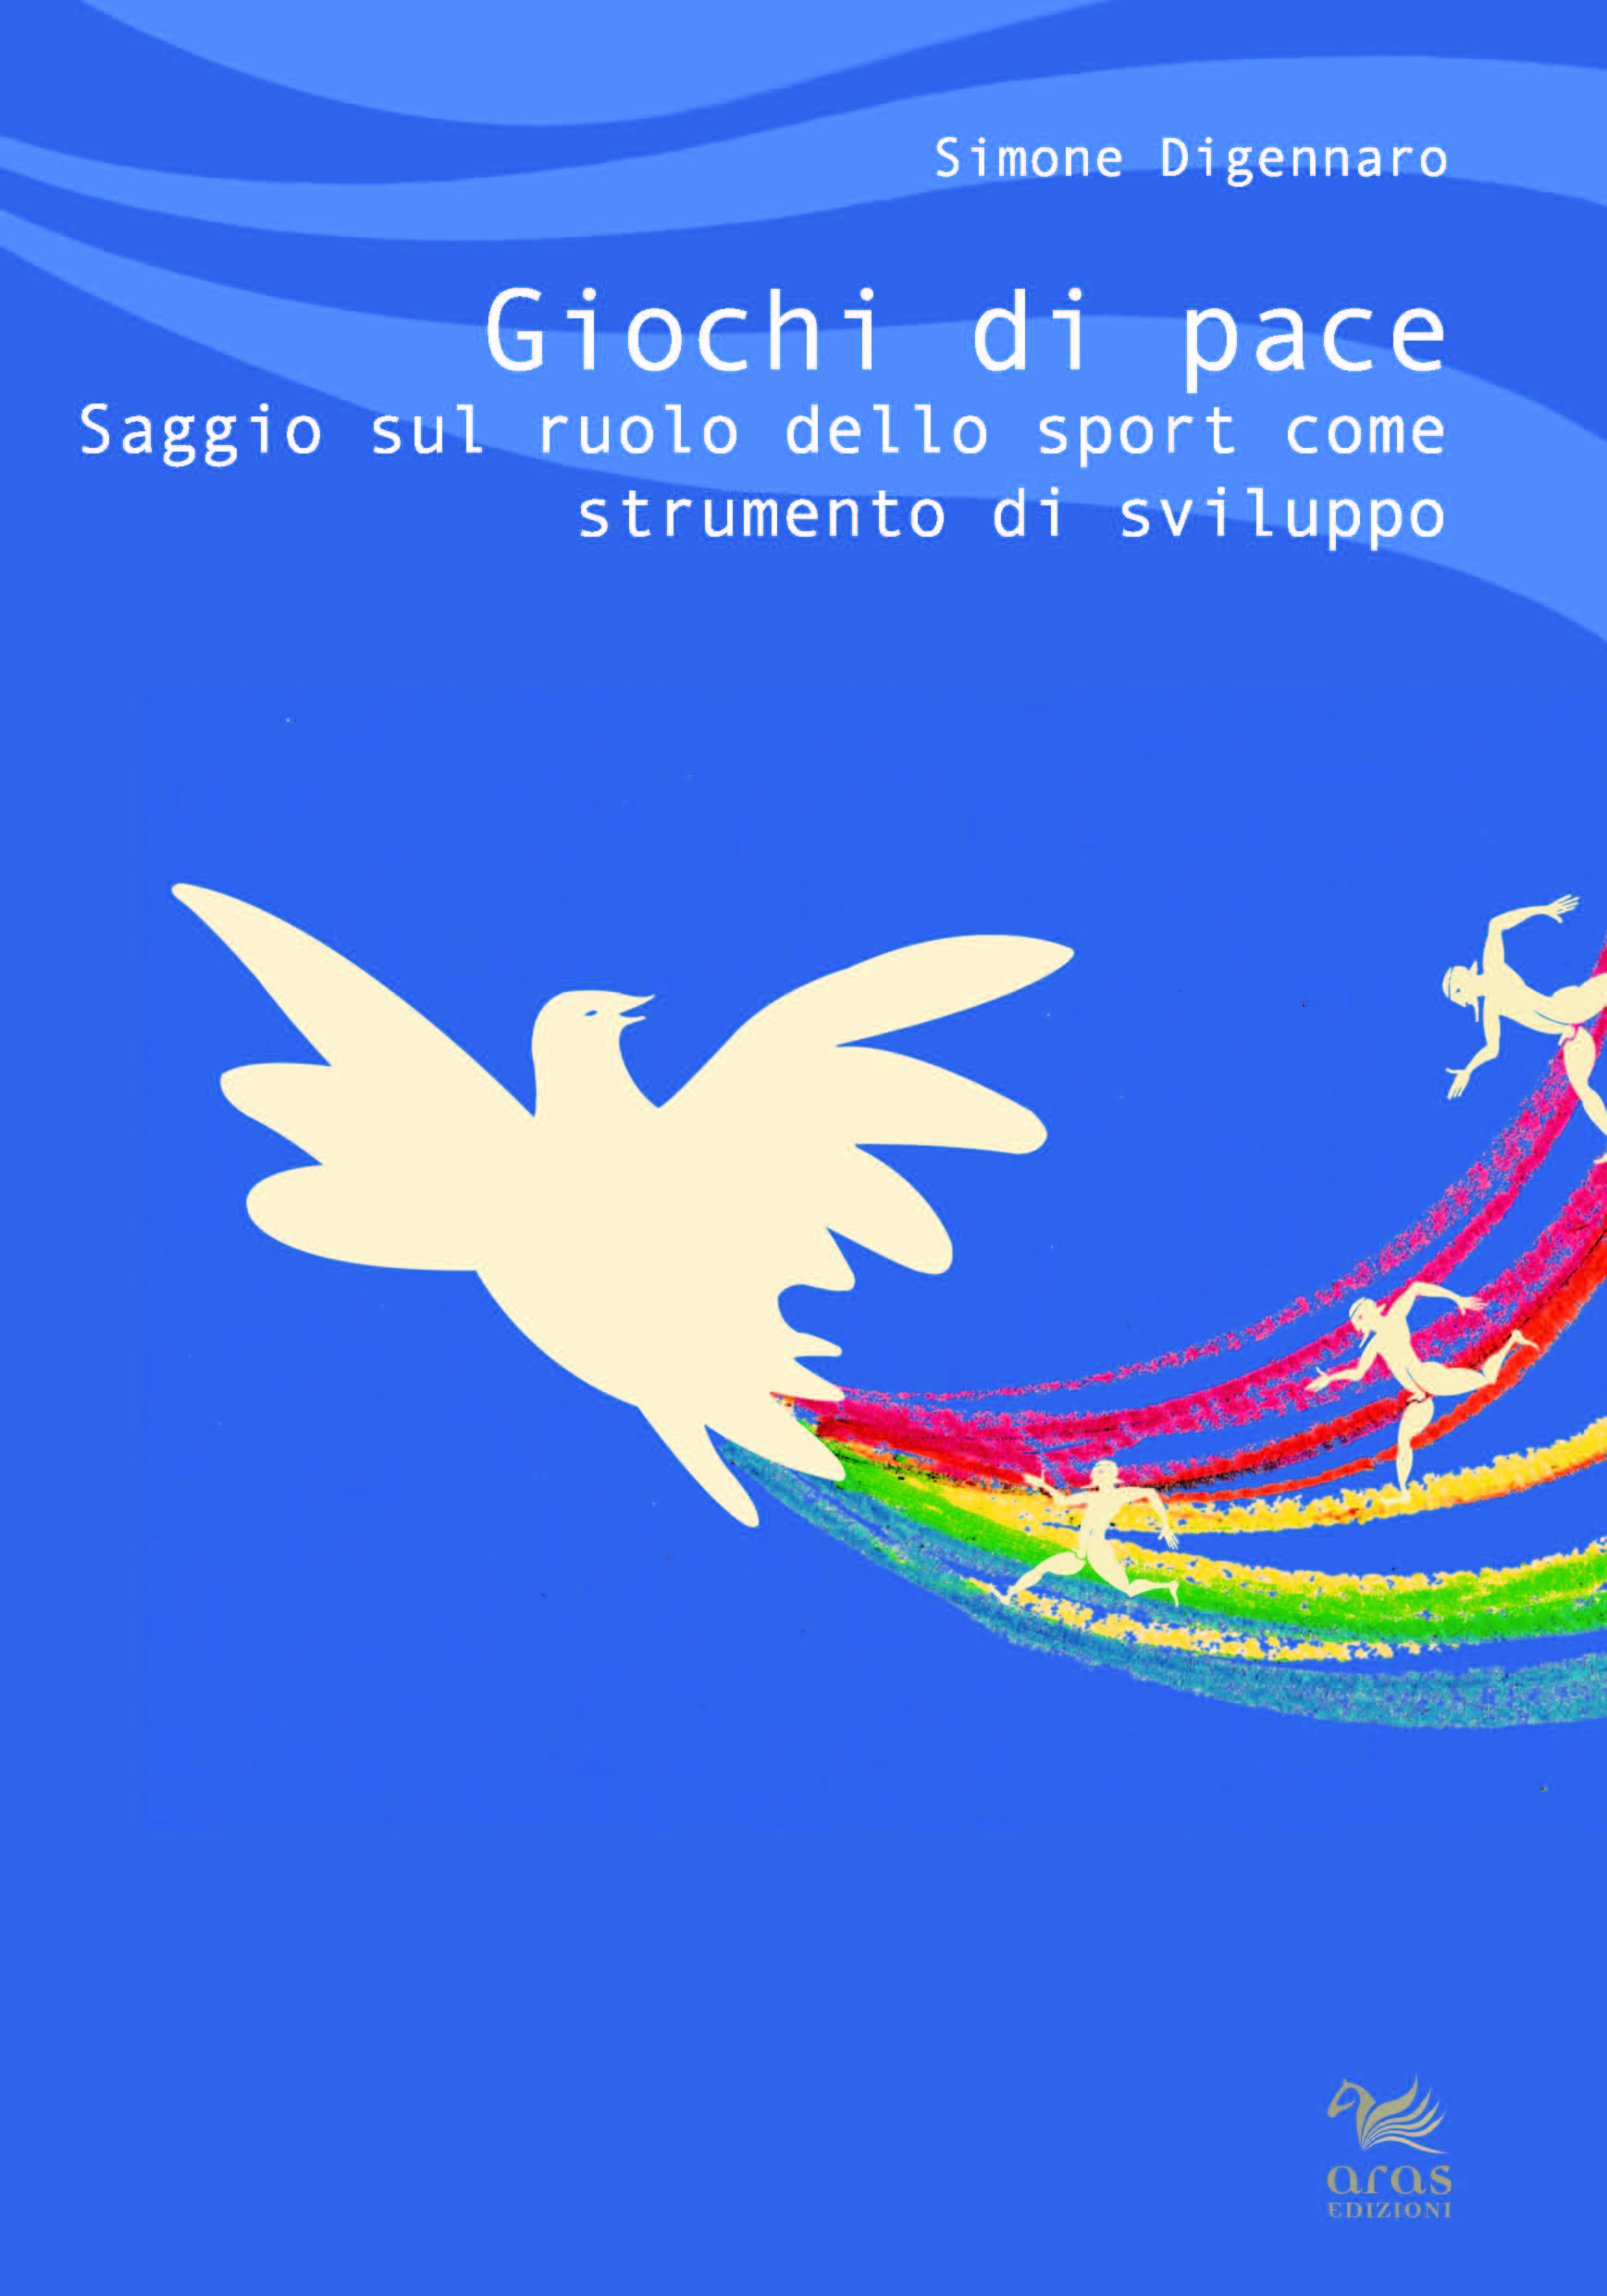 E-book, Giochi di pace : saggio sul ruolo dello sport come strumento di sviluppo, Digennaro, Simone, Aras